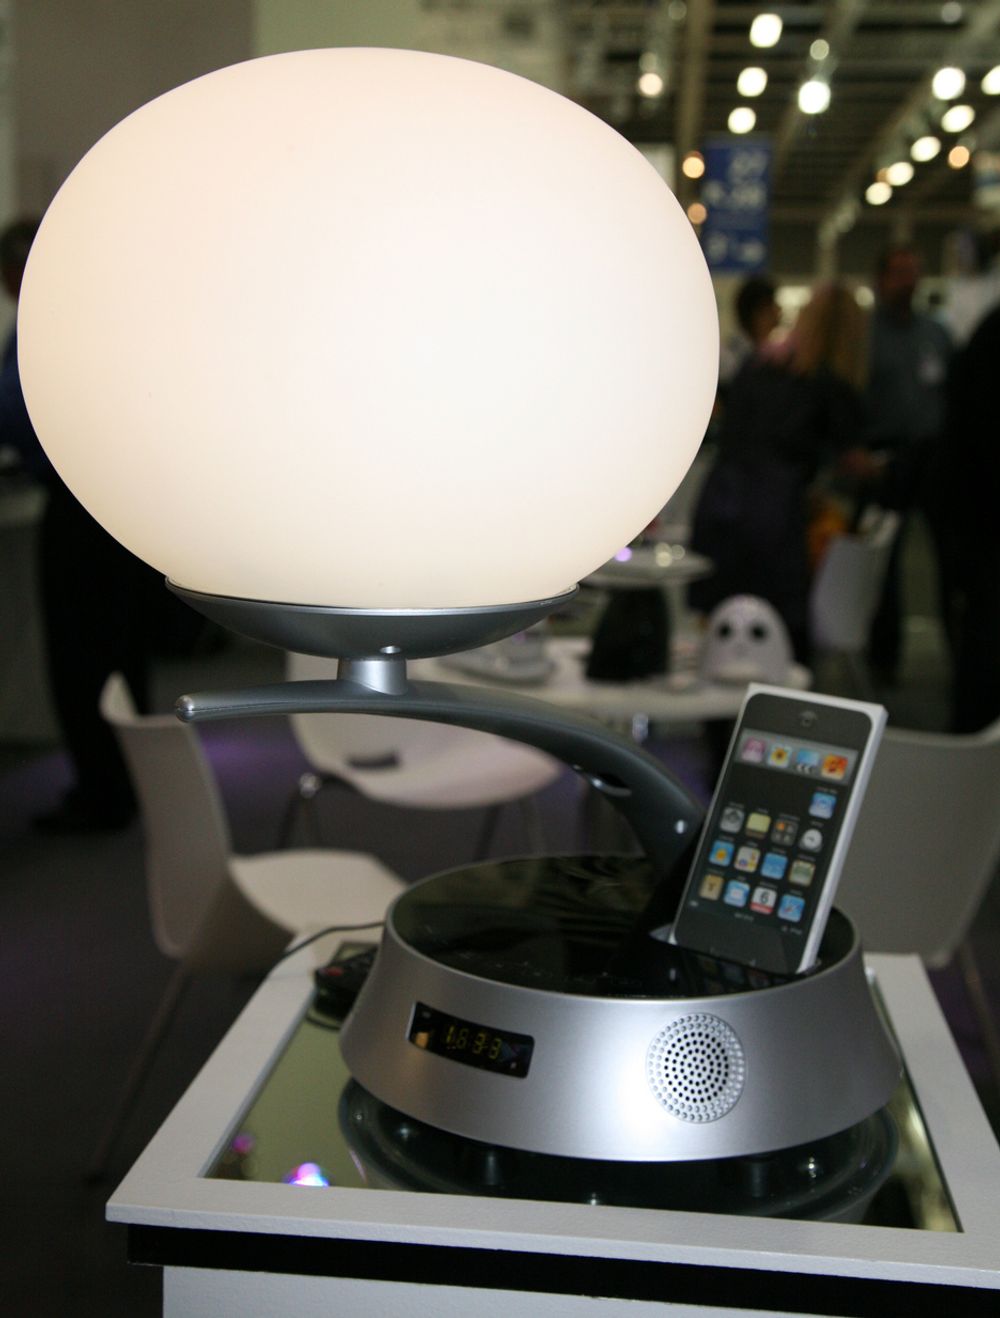 IFA: Kombinert lampe og iPod-anlegg? Det får du i denne modellen fra selskapet Amethyst.